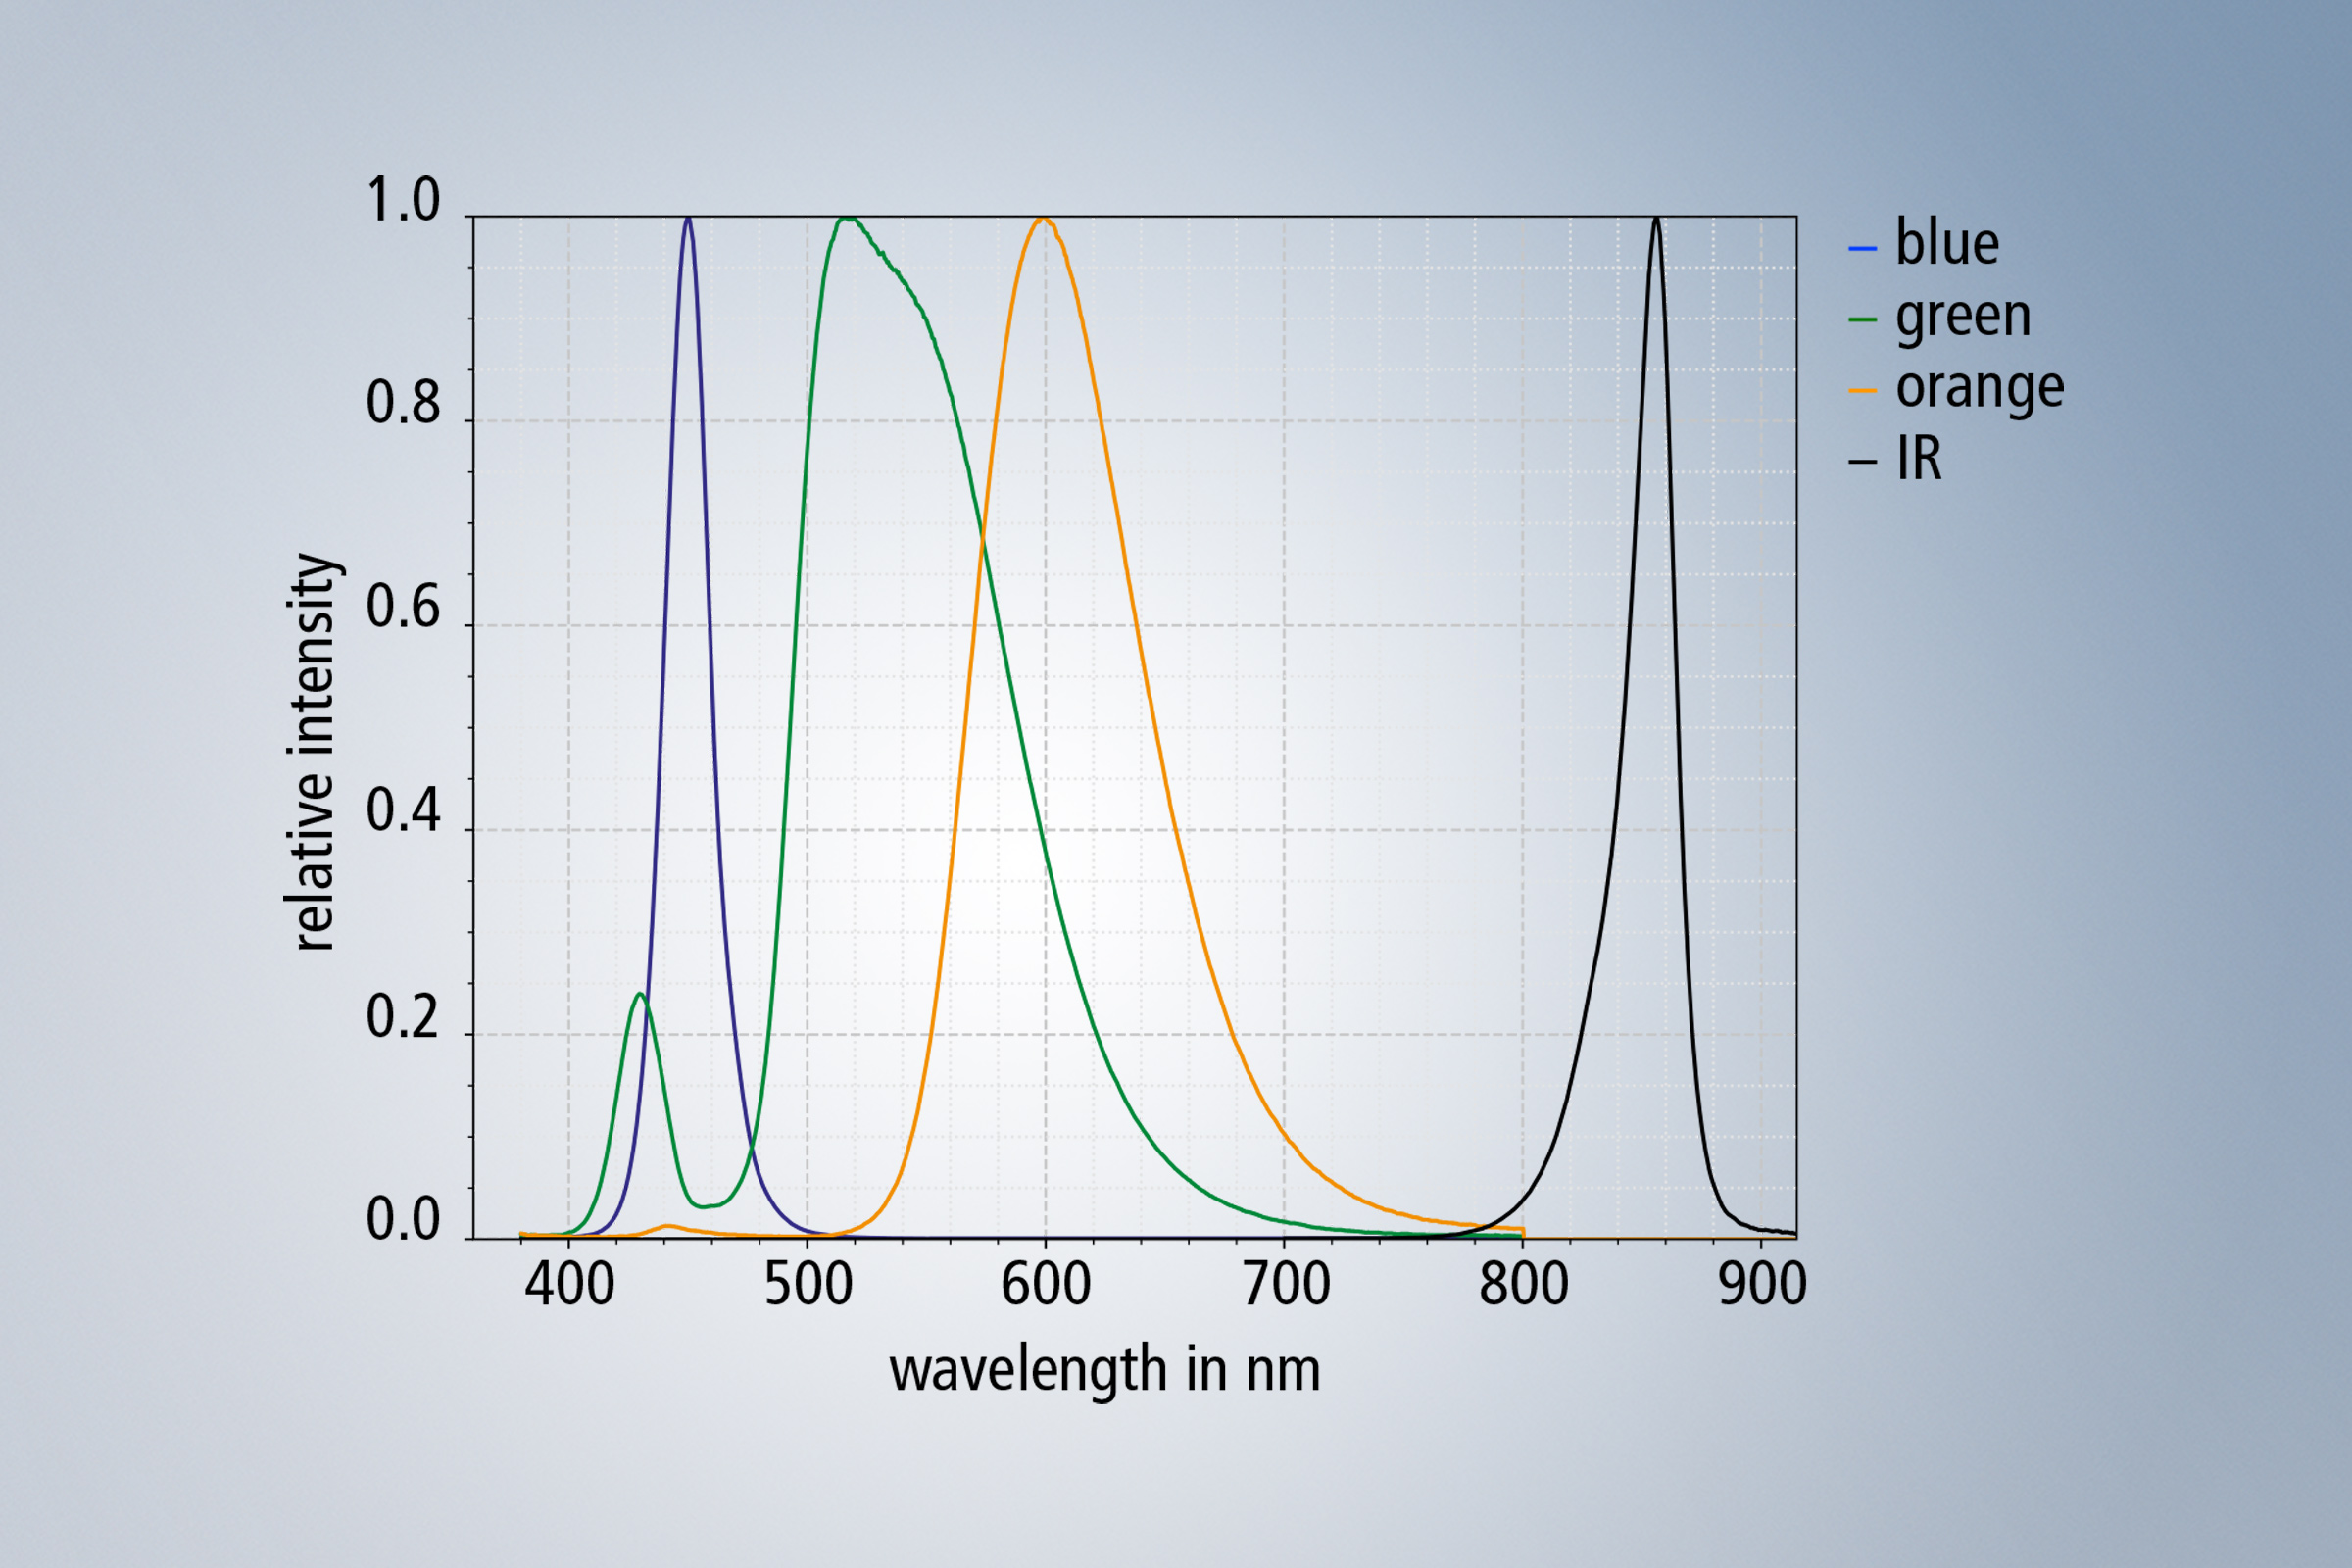 在形成光色时，通过蓝光 LED 芯片确保最佳温度稳定性并完全覆盖所有可见波段， 通过发光材料转换绿色和红橙色的光谱范围，以实现此目的。 